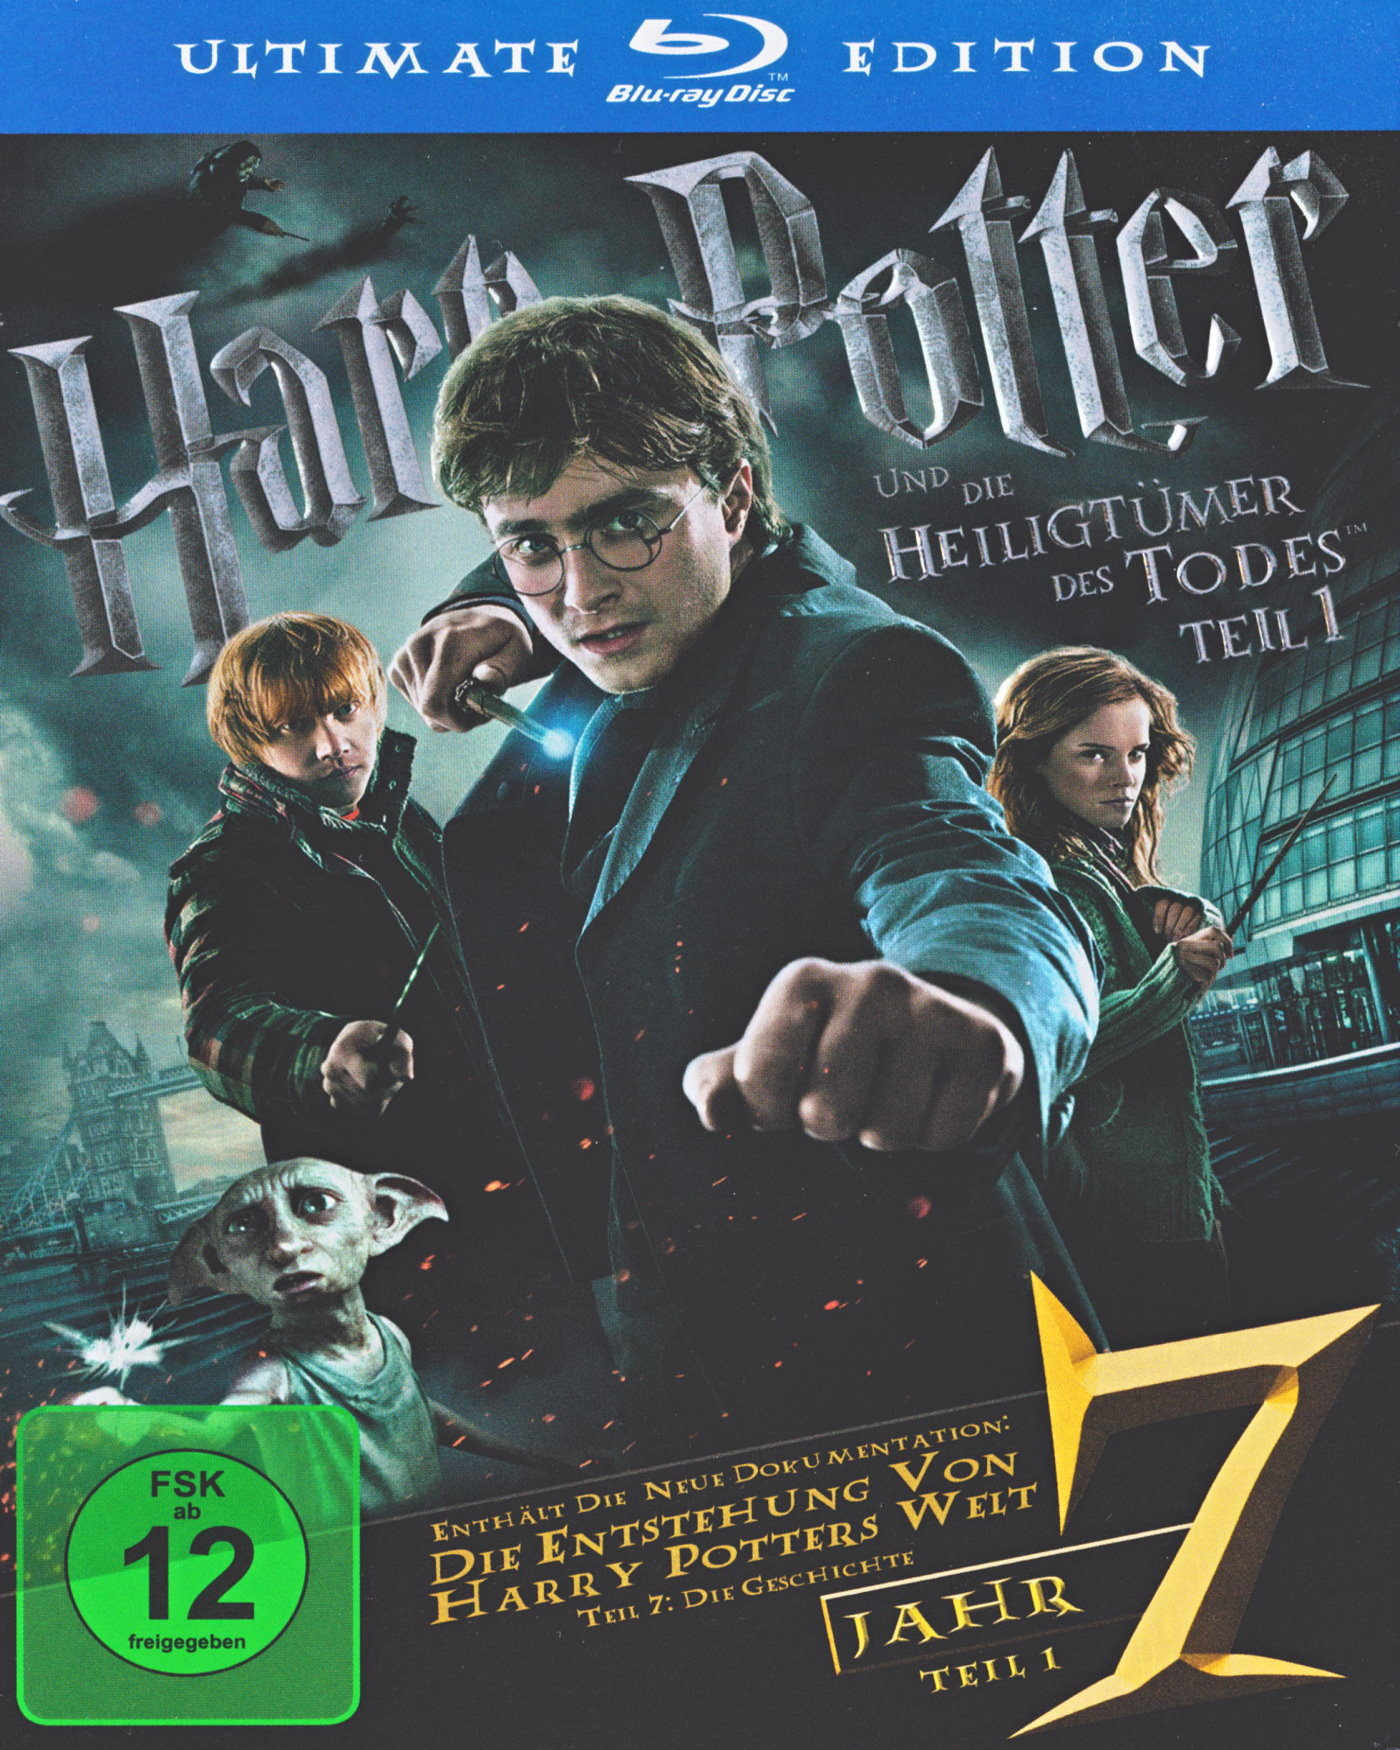 Cover - Harry Potter und die Heiligtümer des Todes - Teil 1.jpg